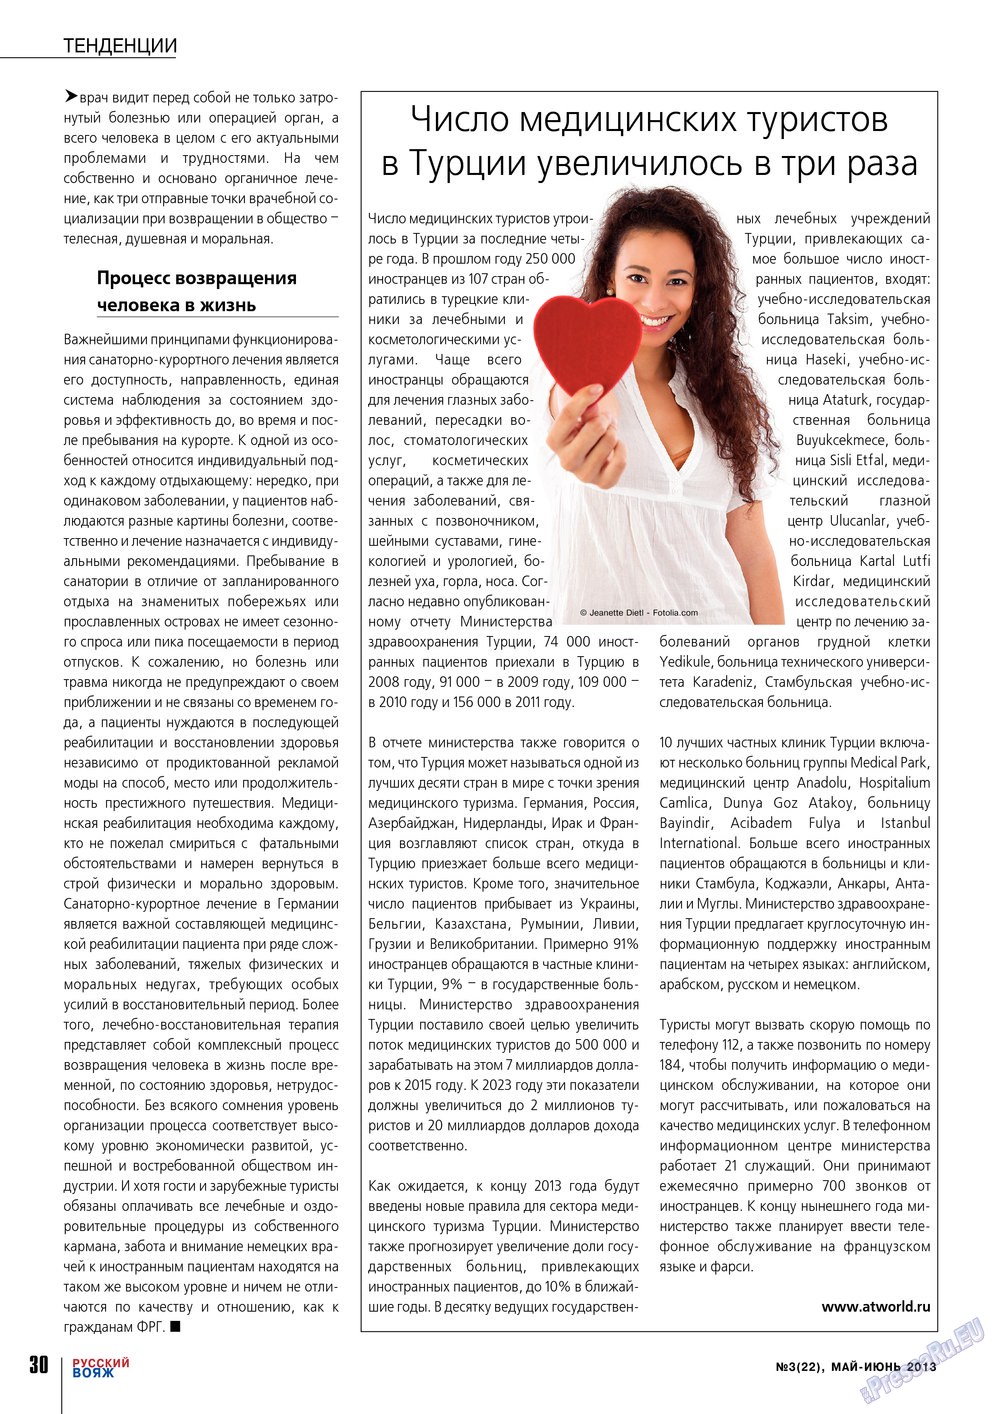 Русский вояж (журнал). 2013 год, номер 22, стр. 30